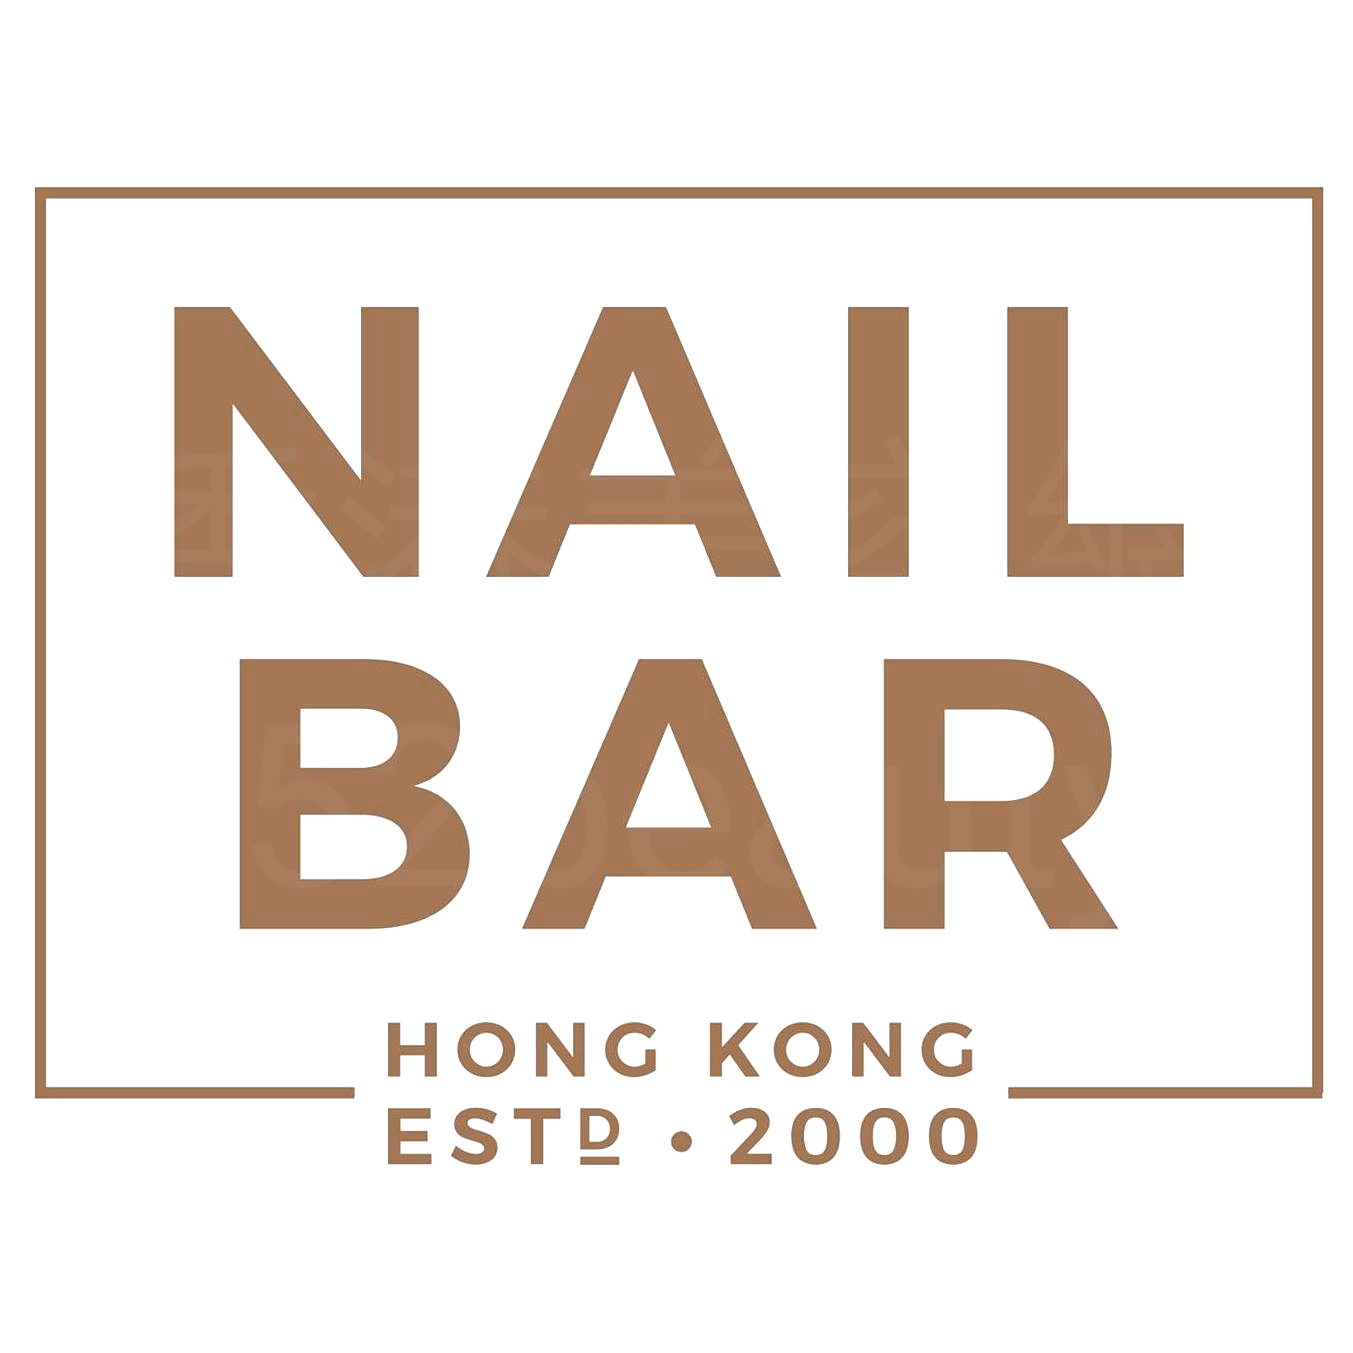 香港美容網 Hong Kong Beauty Salon 美容院 / 美容師: NAIL BAR (美孚店) (光榮結業)